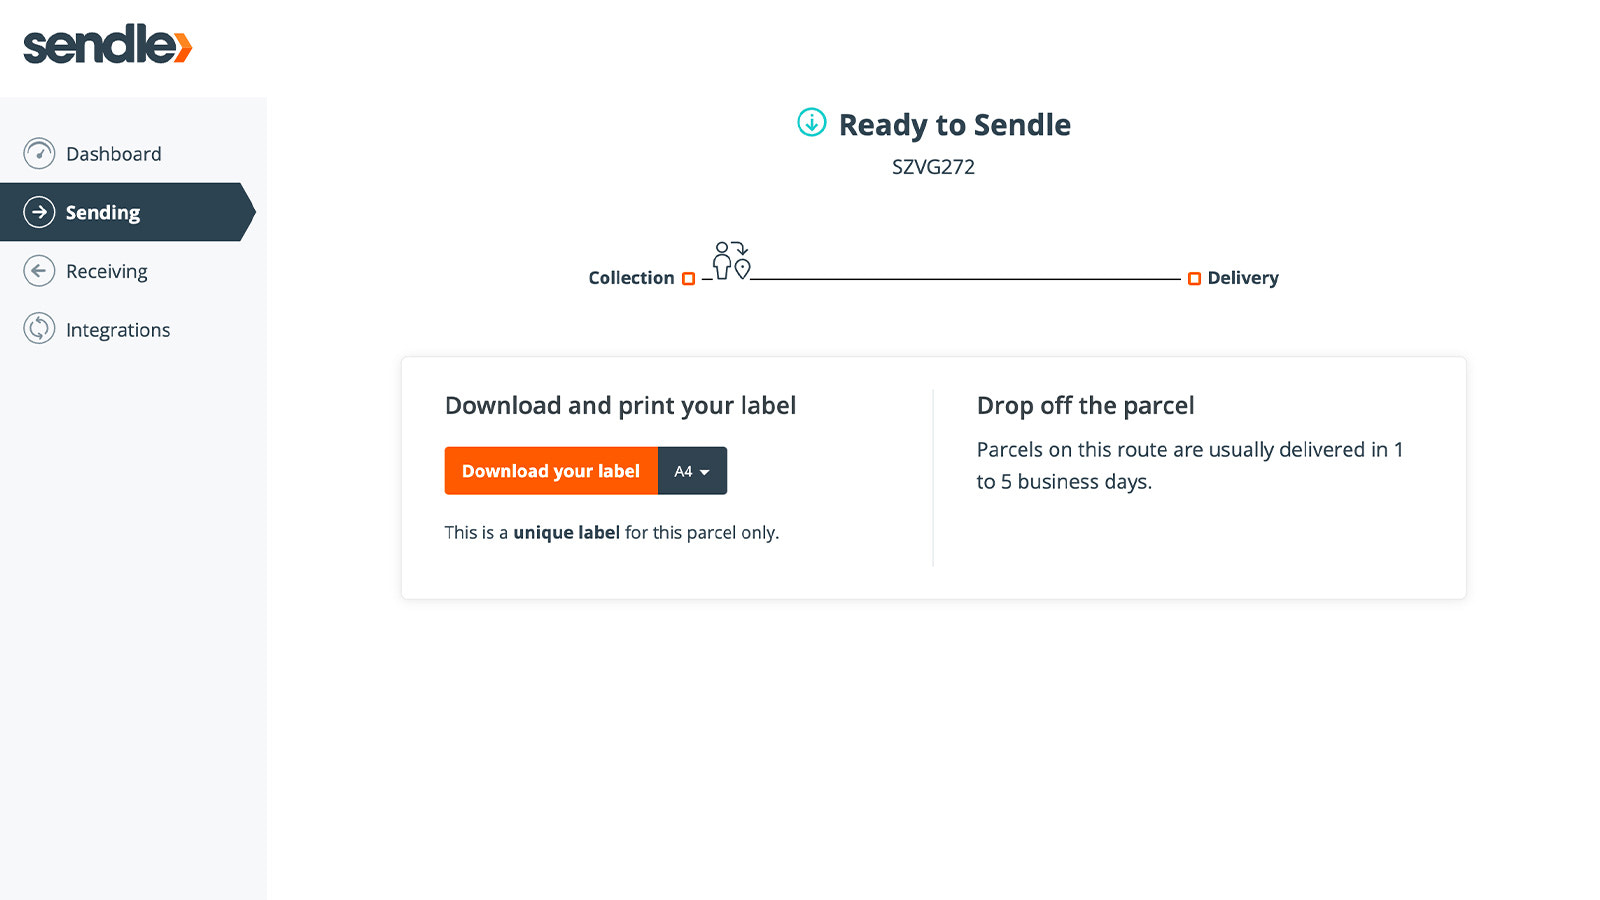 Captura de pantalla mostrando la página de seguimiento de pedidos de Sendle.